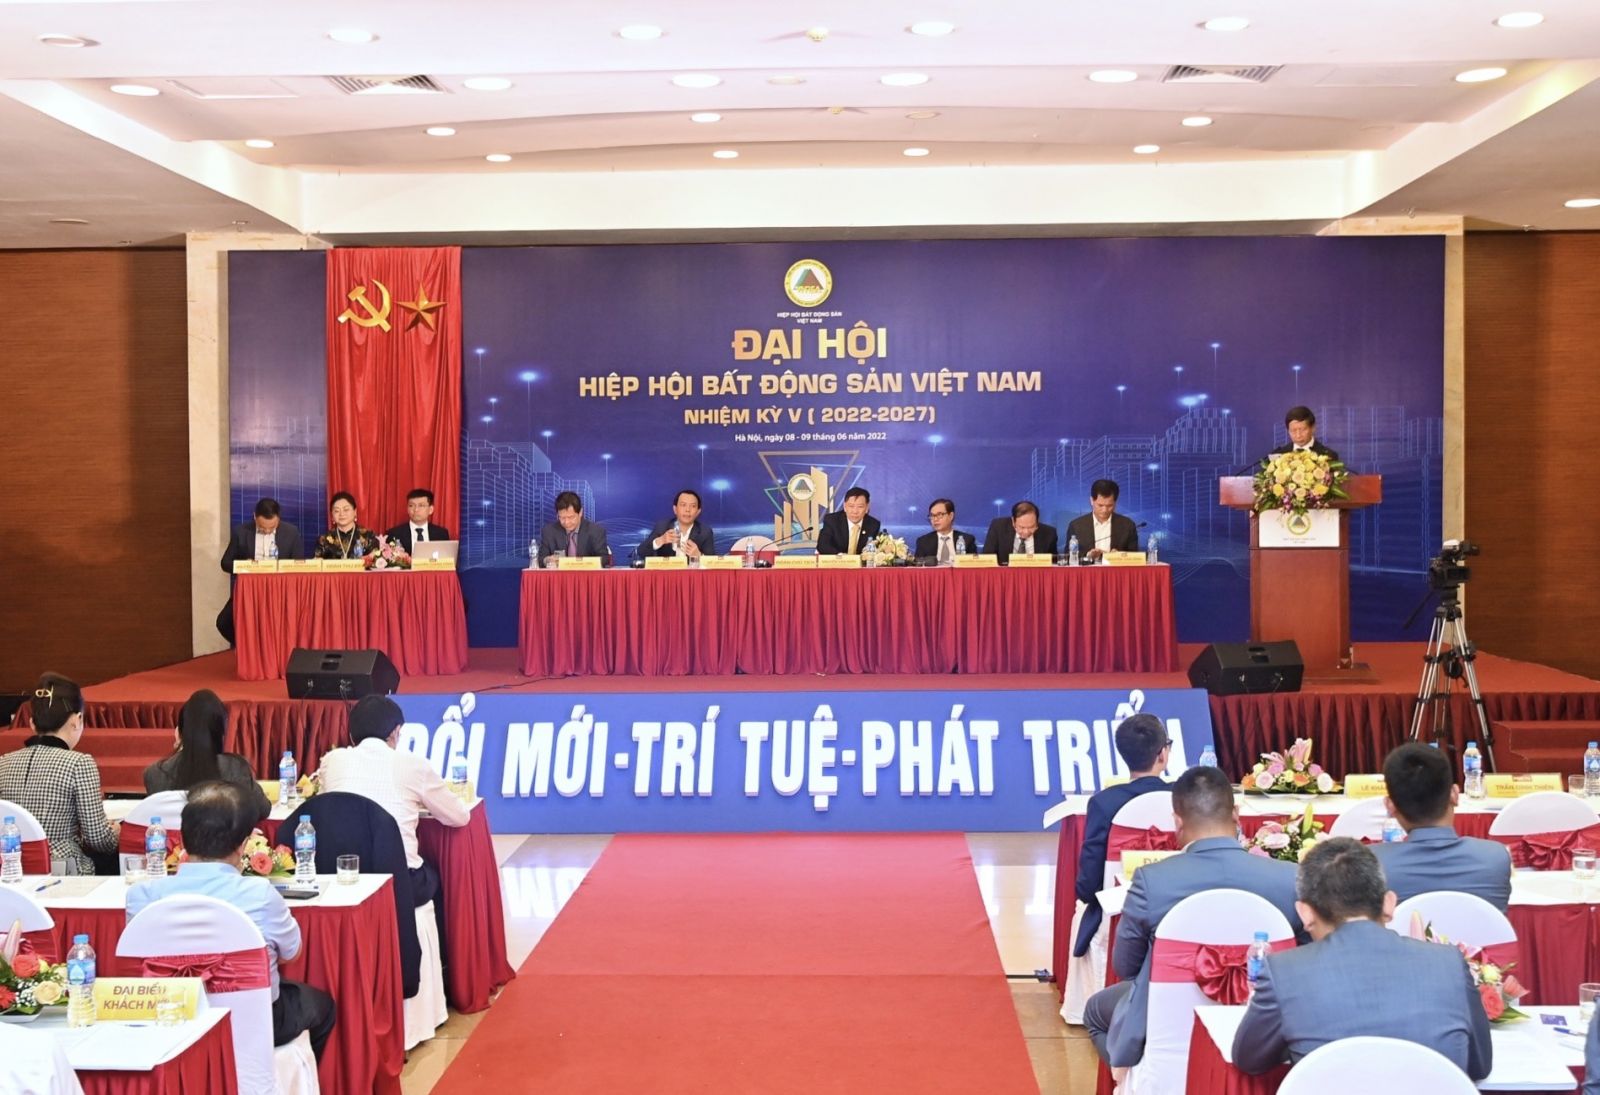 Hội viên tin tưởng tuyệt đối và đặt kỳ vọng lớn vào Hiệp hội Bất động sản Việt Nam nhiệm kỳ V- Ảnh 1.